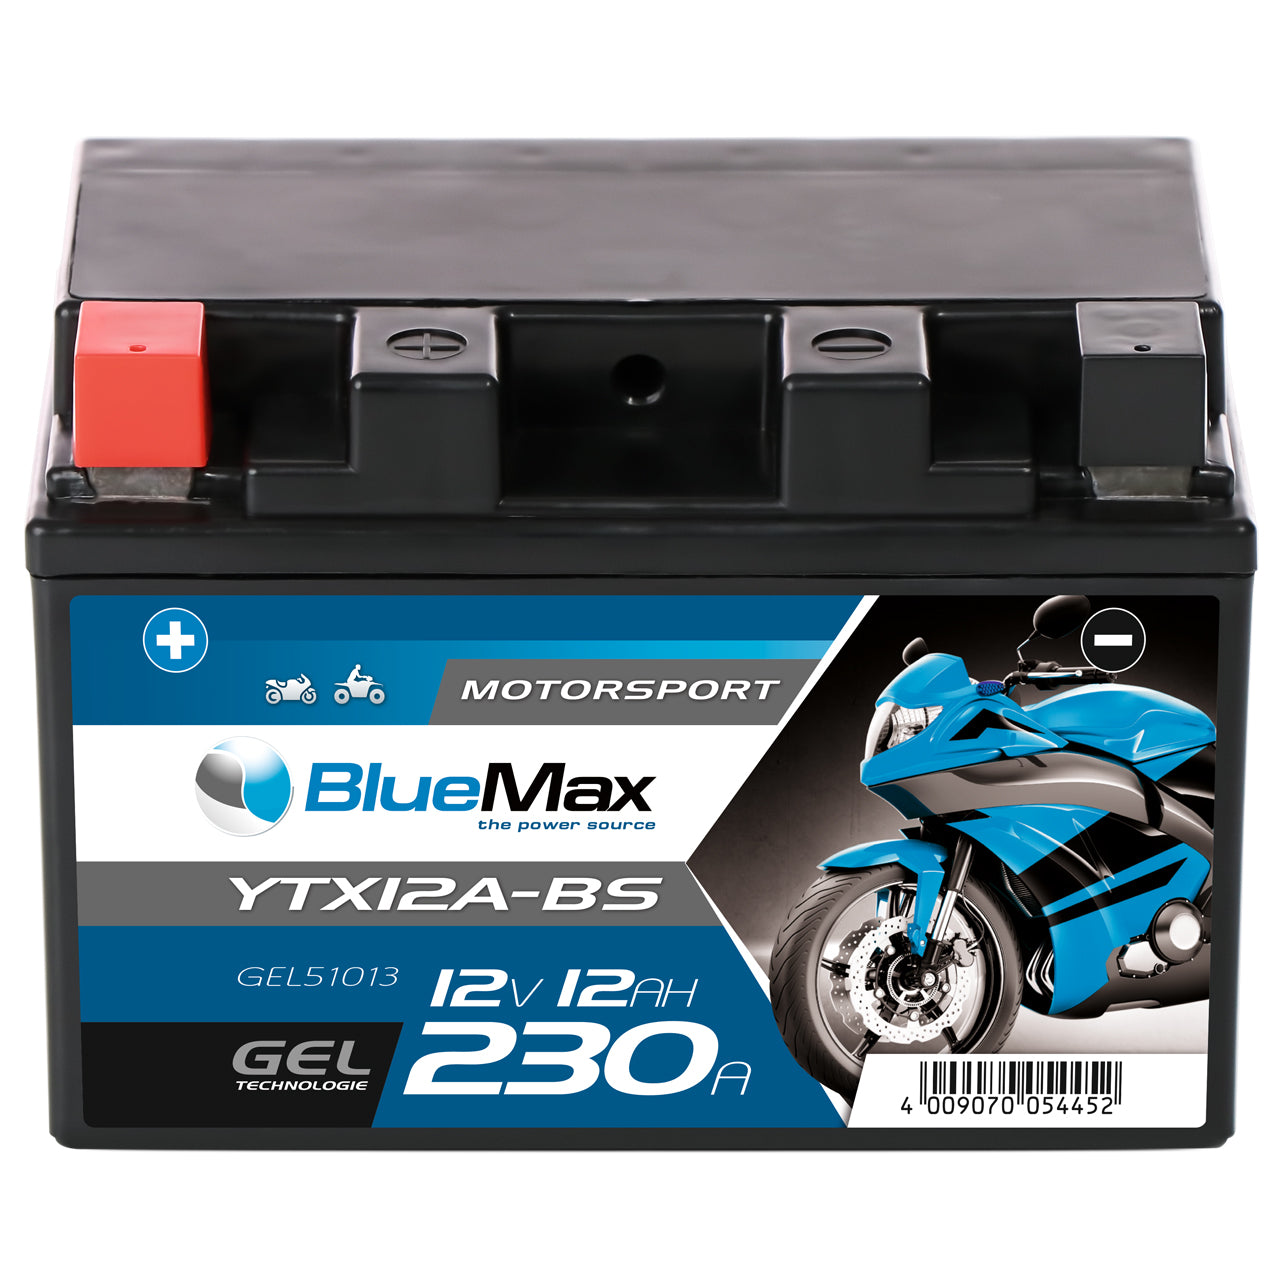 BlueMax CTX12A-BS Motorradbatterie GEL 12V 12Ah 230A/EN YTX12A-BS